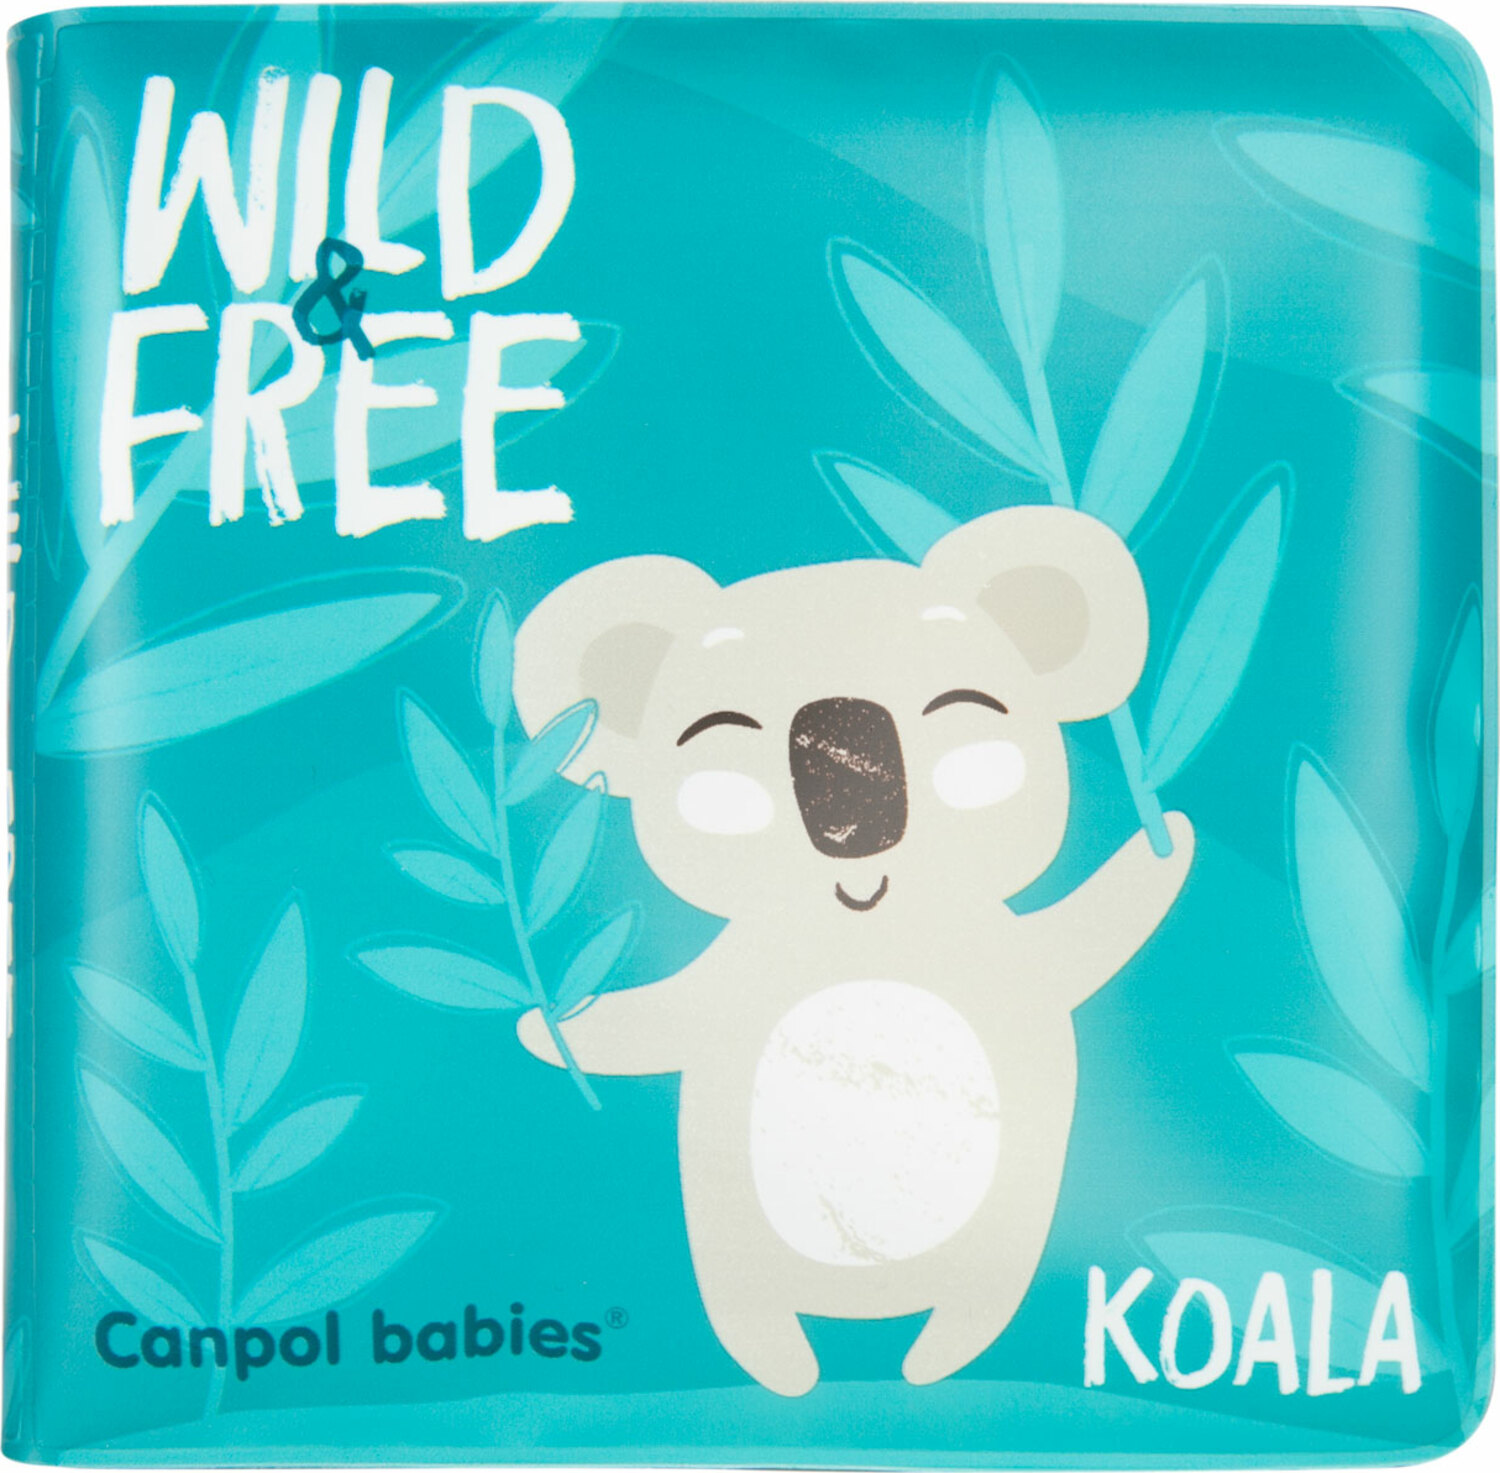 CANPOL BABIES Knížka měkká pískací Koala